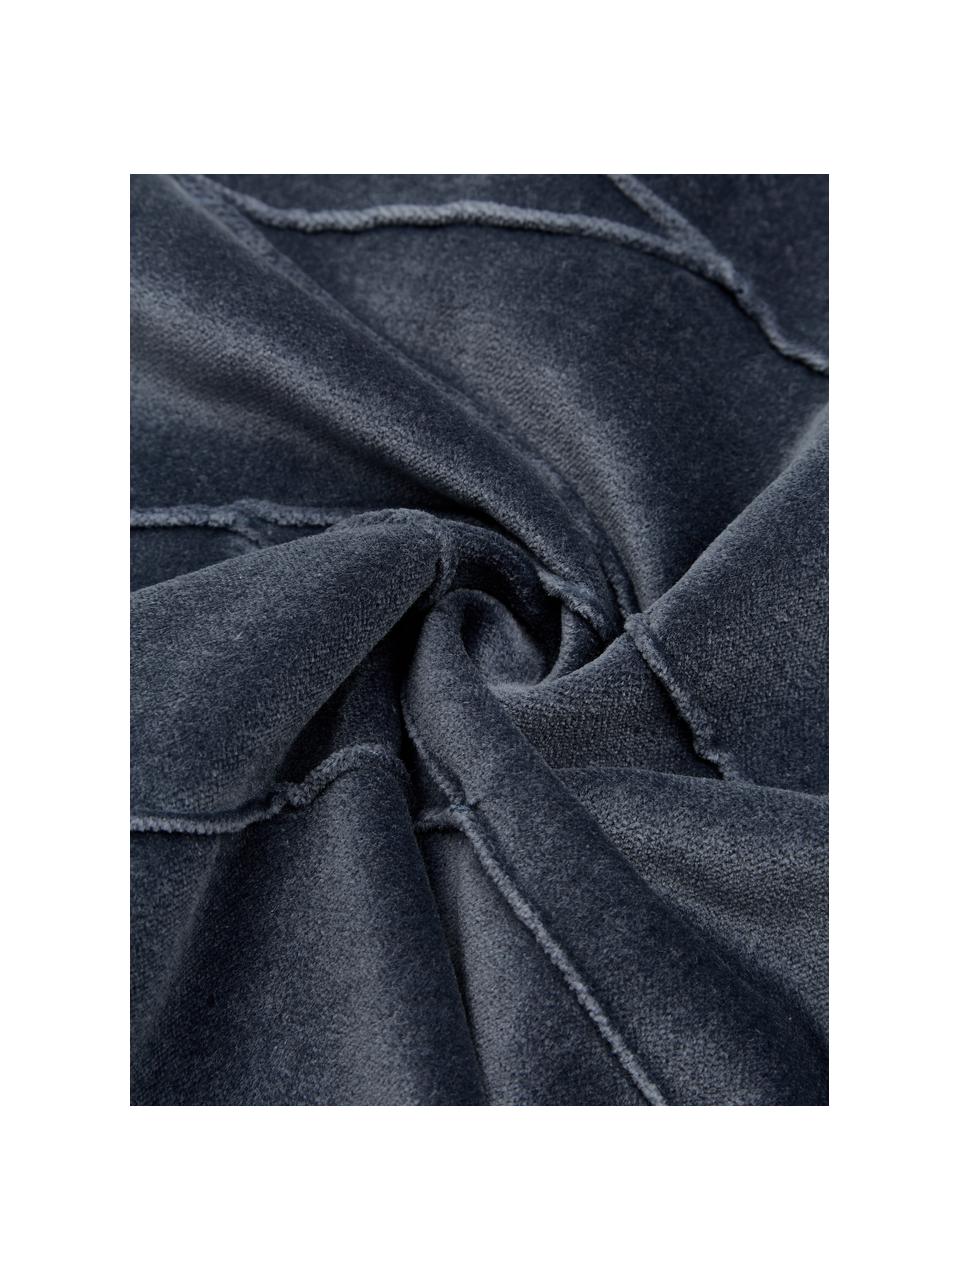 Samt-Kissen Pintuck in Blau mit erhabenem Strukturmuster, mit Inlett, Bezug: 55% Rayon, 45% Baumwolle, Webart: Samt, Blau, 45 x 45 cm